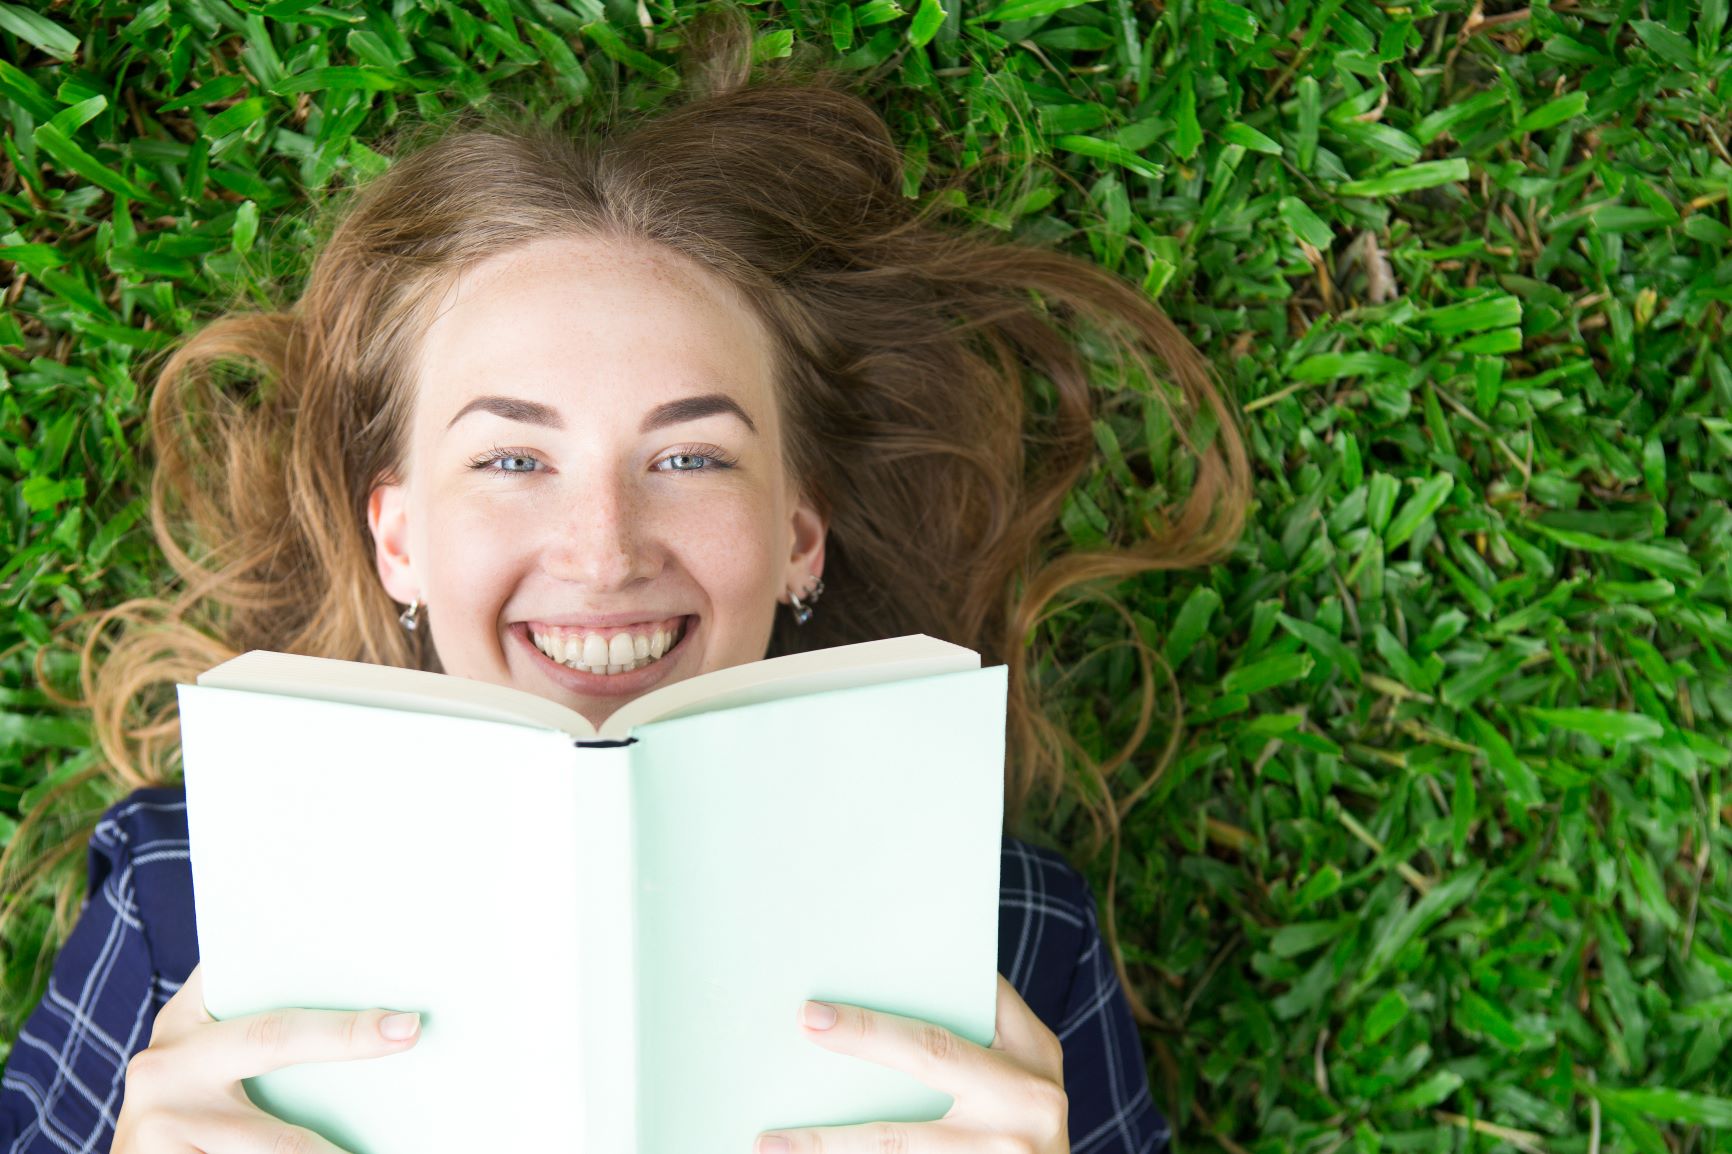 Single read. Девушка с книгой улыбается. Девочка с книжкой на траве. Девушка на траве с книгой. Девушка бумажная книга лайк.